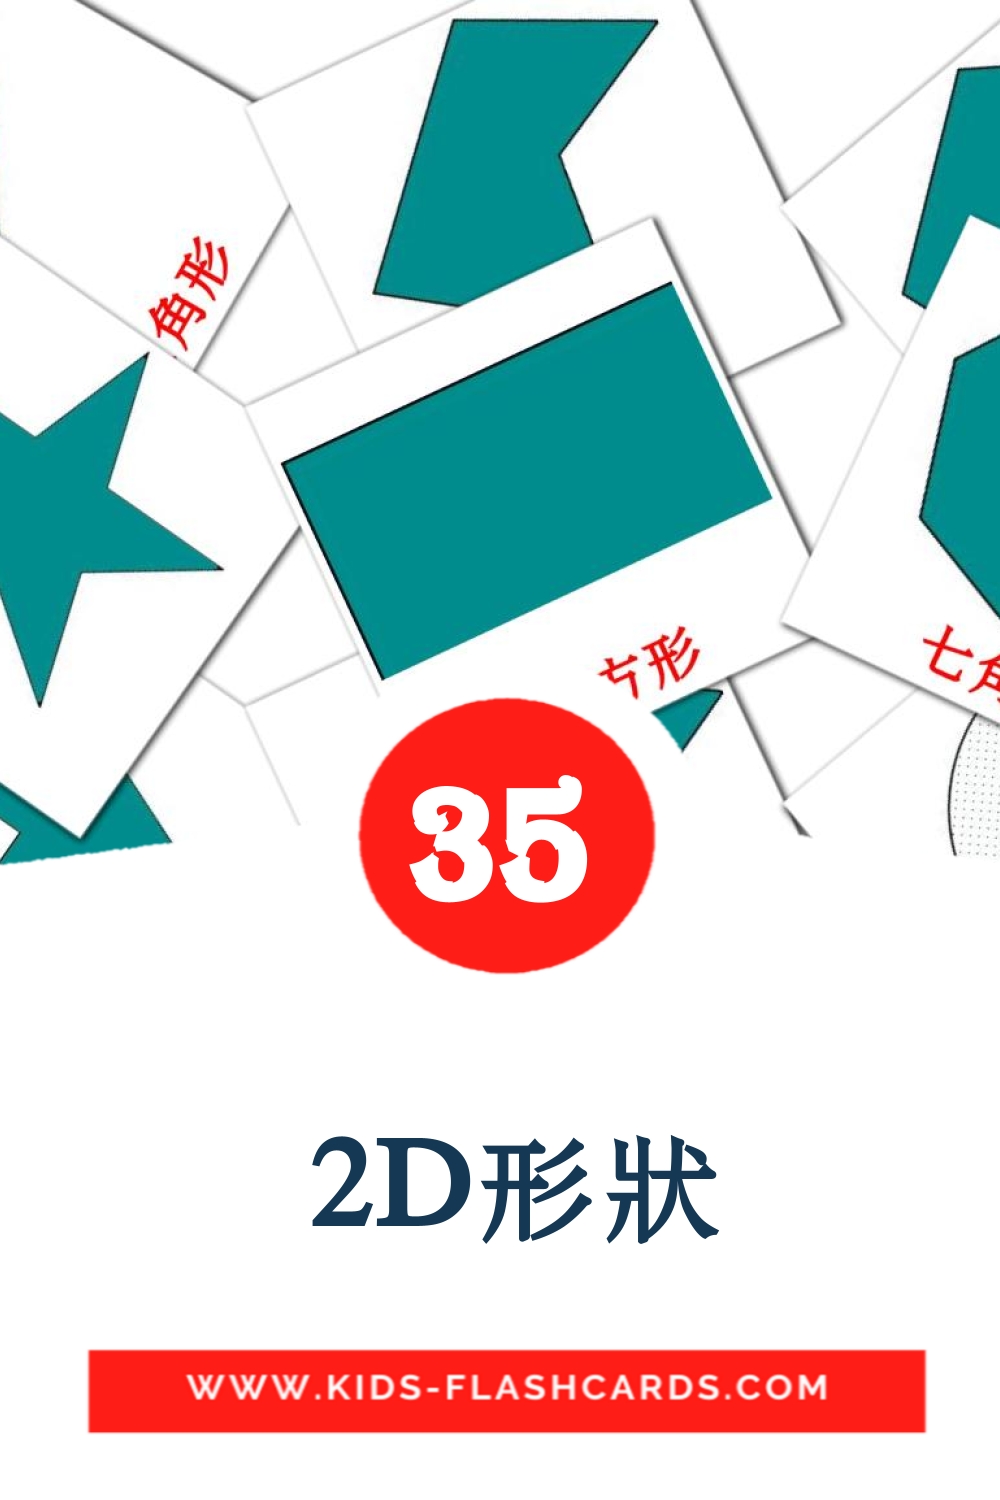 35 carte illustrate di  2D形狀 per la scuola materna in cinese(tradizionale)